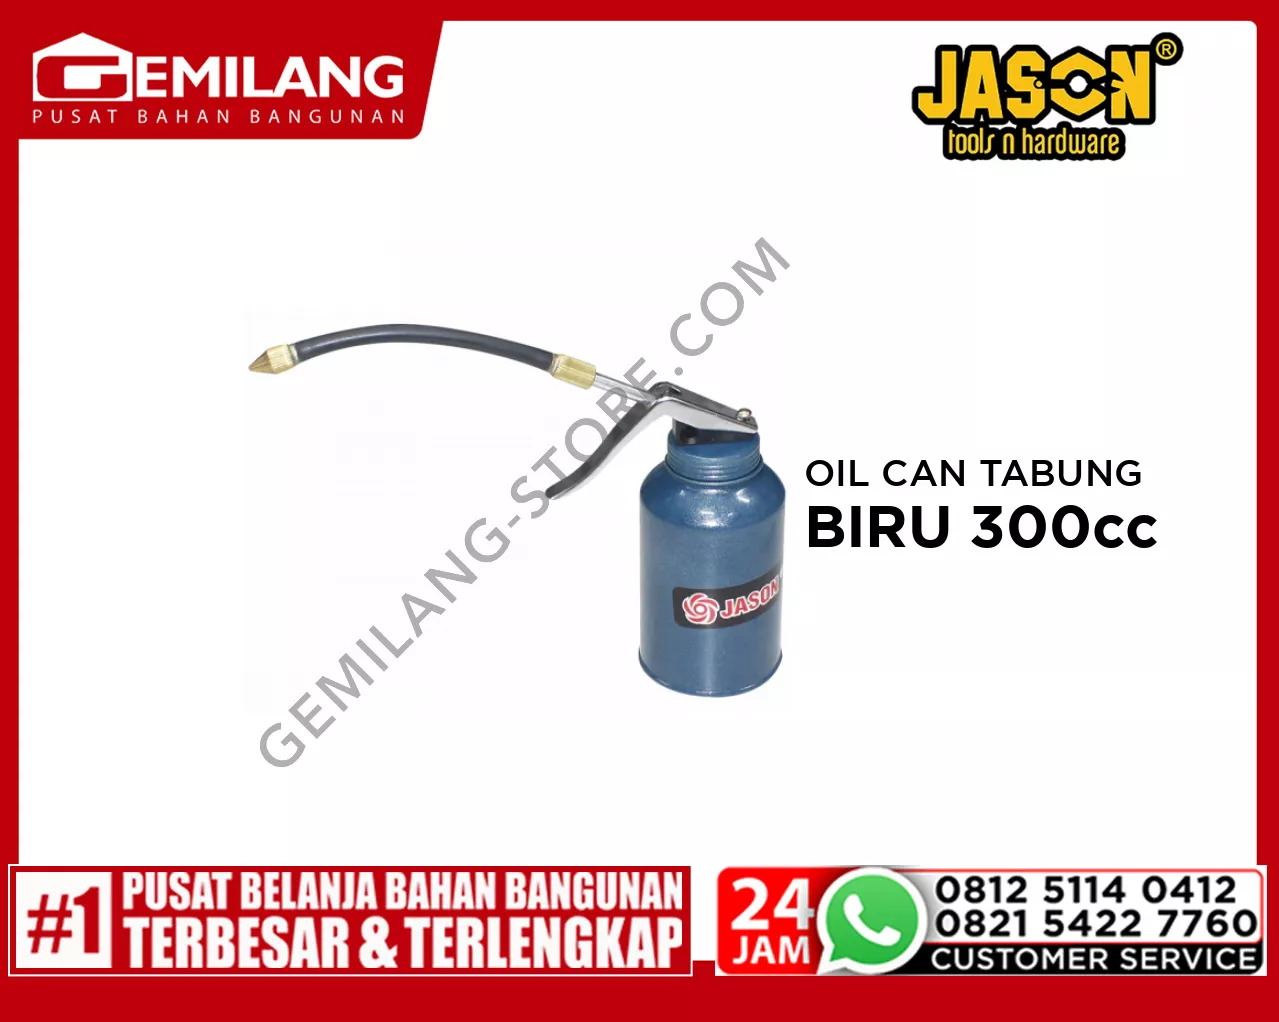 JASON OIL CAN TABUNG BIRU 300cc (359.034)